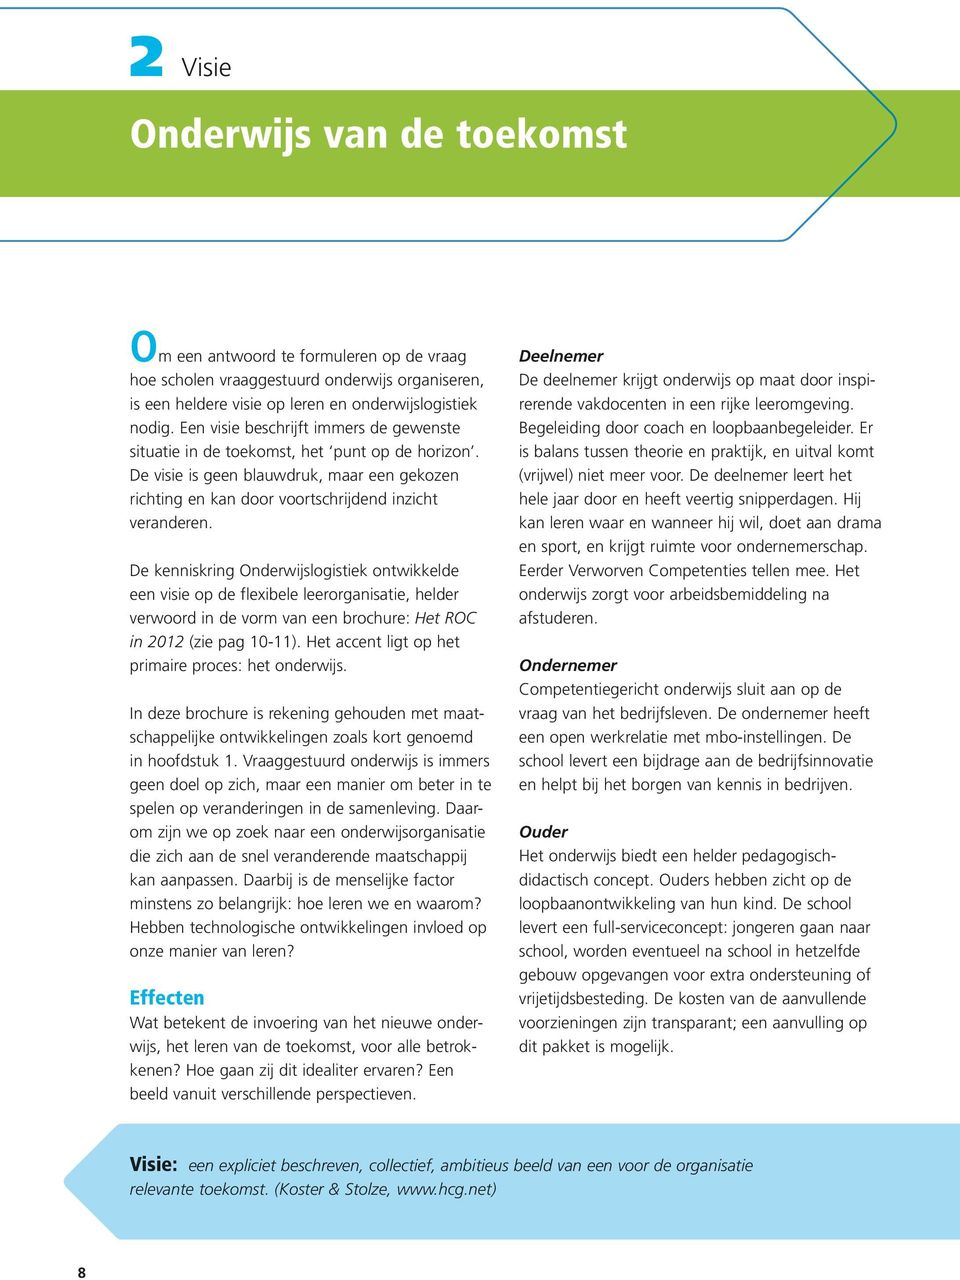 De kenniskring Onderwijslogistiek ontwikkelde een visie op de flexibele leerorganisatie, helder verwoord in de vorm van een brochure: Het ROC in 2012 (zie pag 10-11).